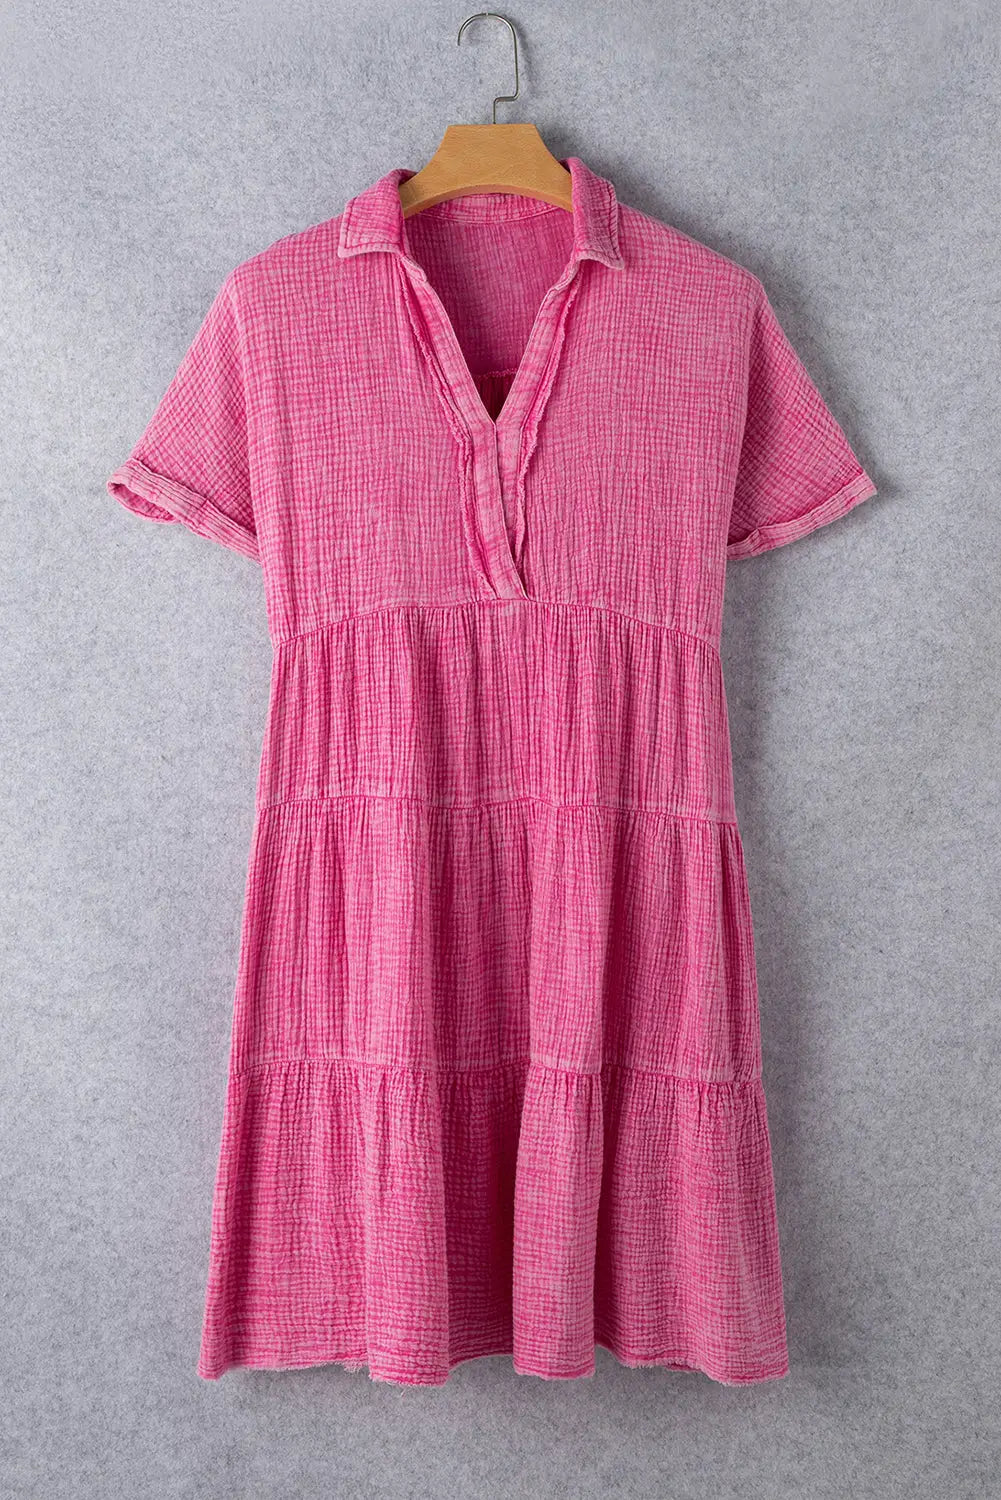 Strawberry pink mineral wash tiered dress - dresses/mini dresses